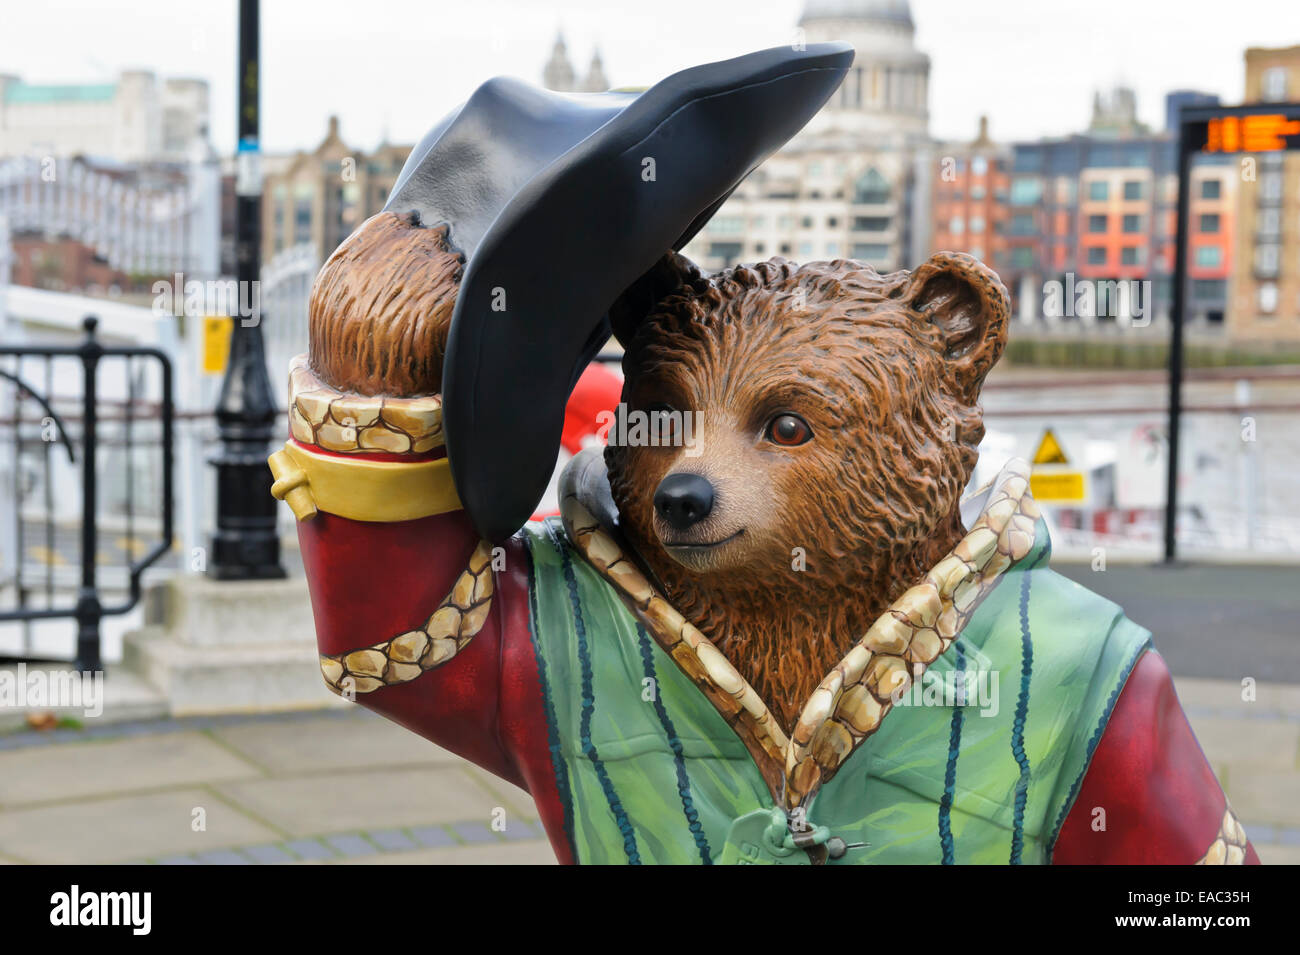 Un modèle de la rue de Michael Bond's personnage fictif l'ours Paddington dans City of London, Angleterre, Royaume-Uni. Banque D'Images